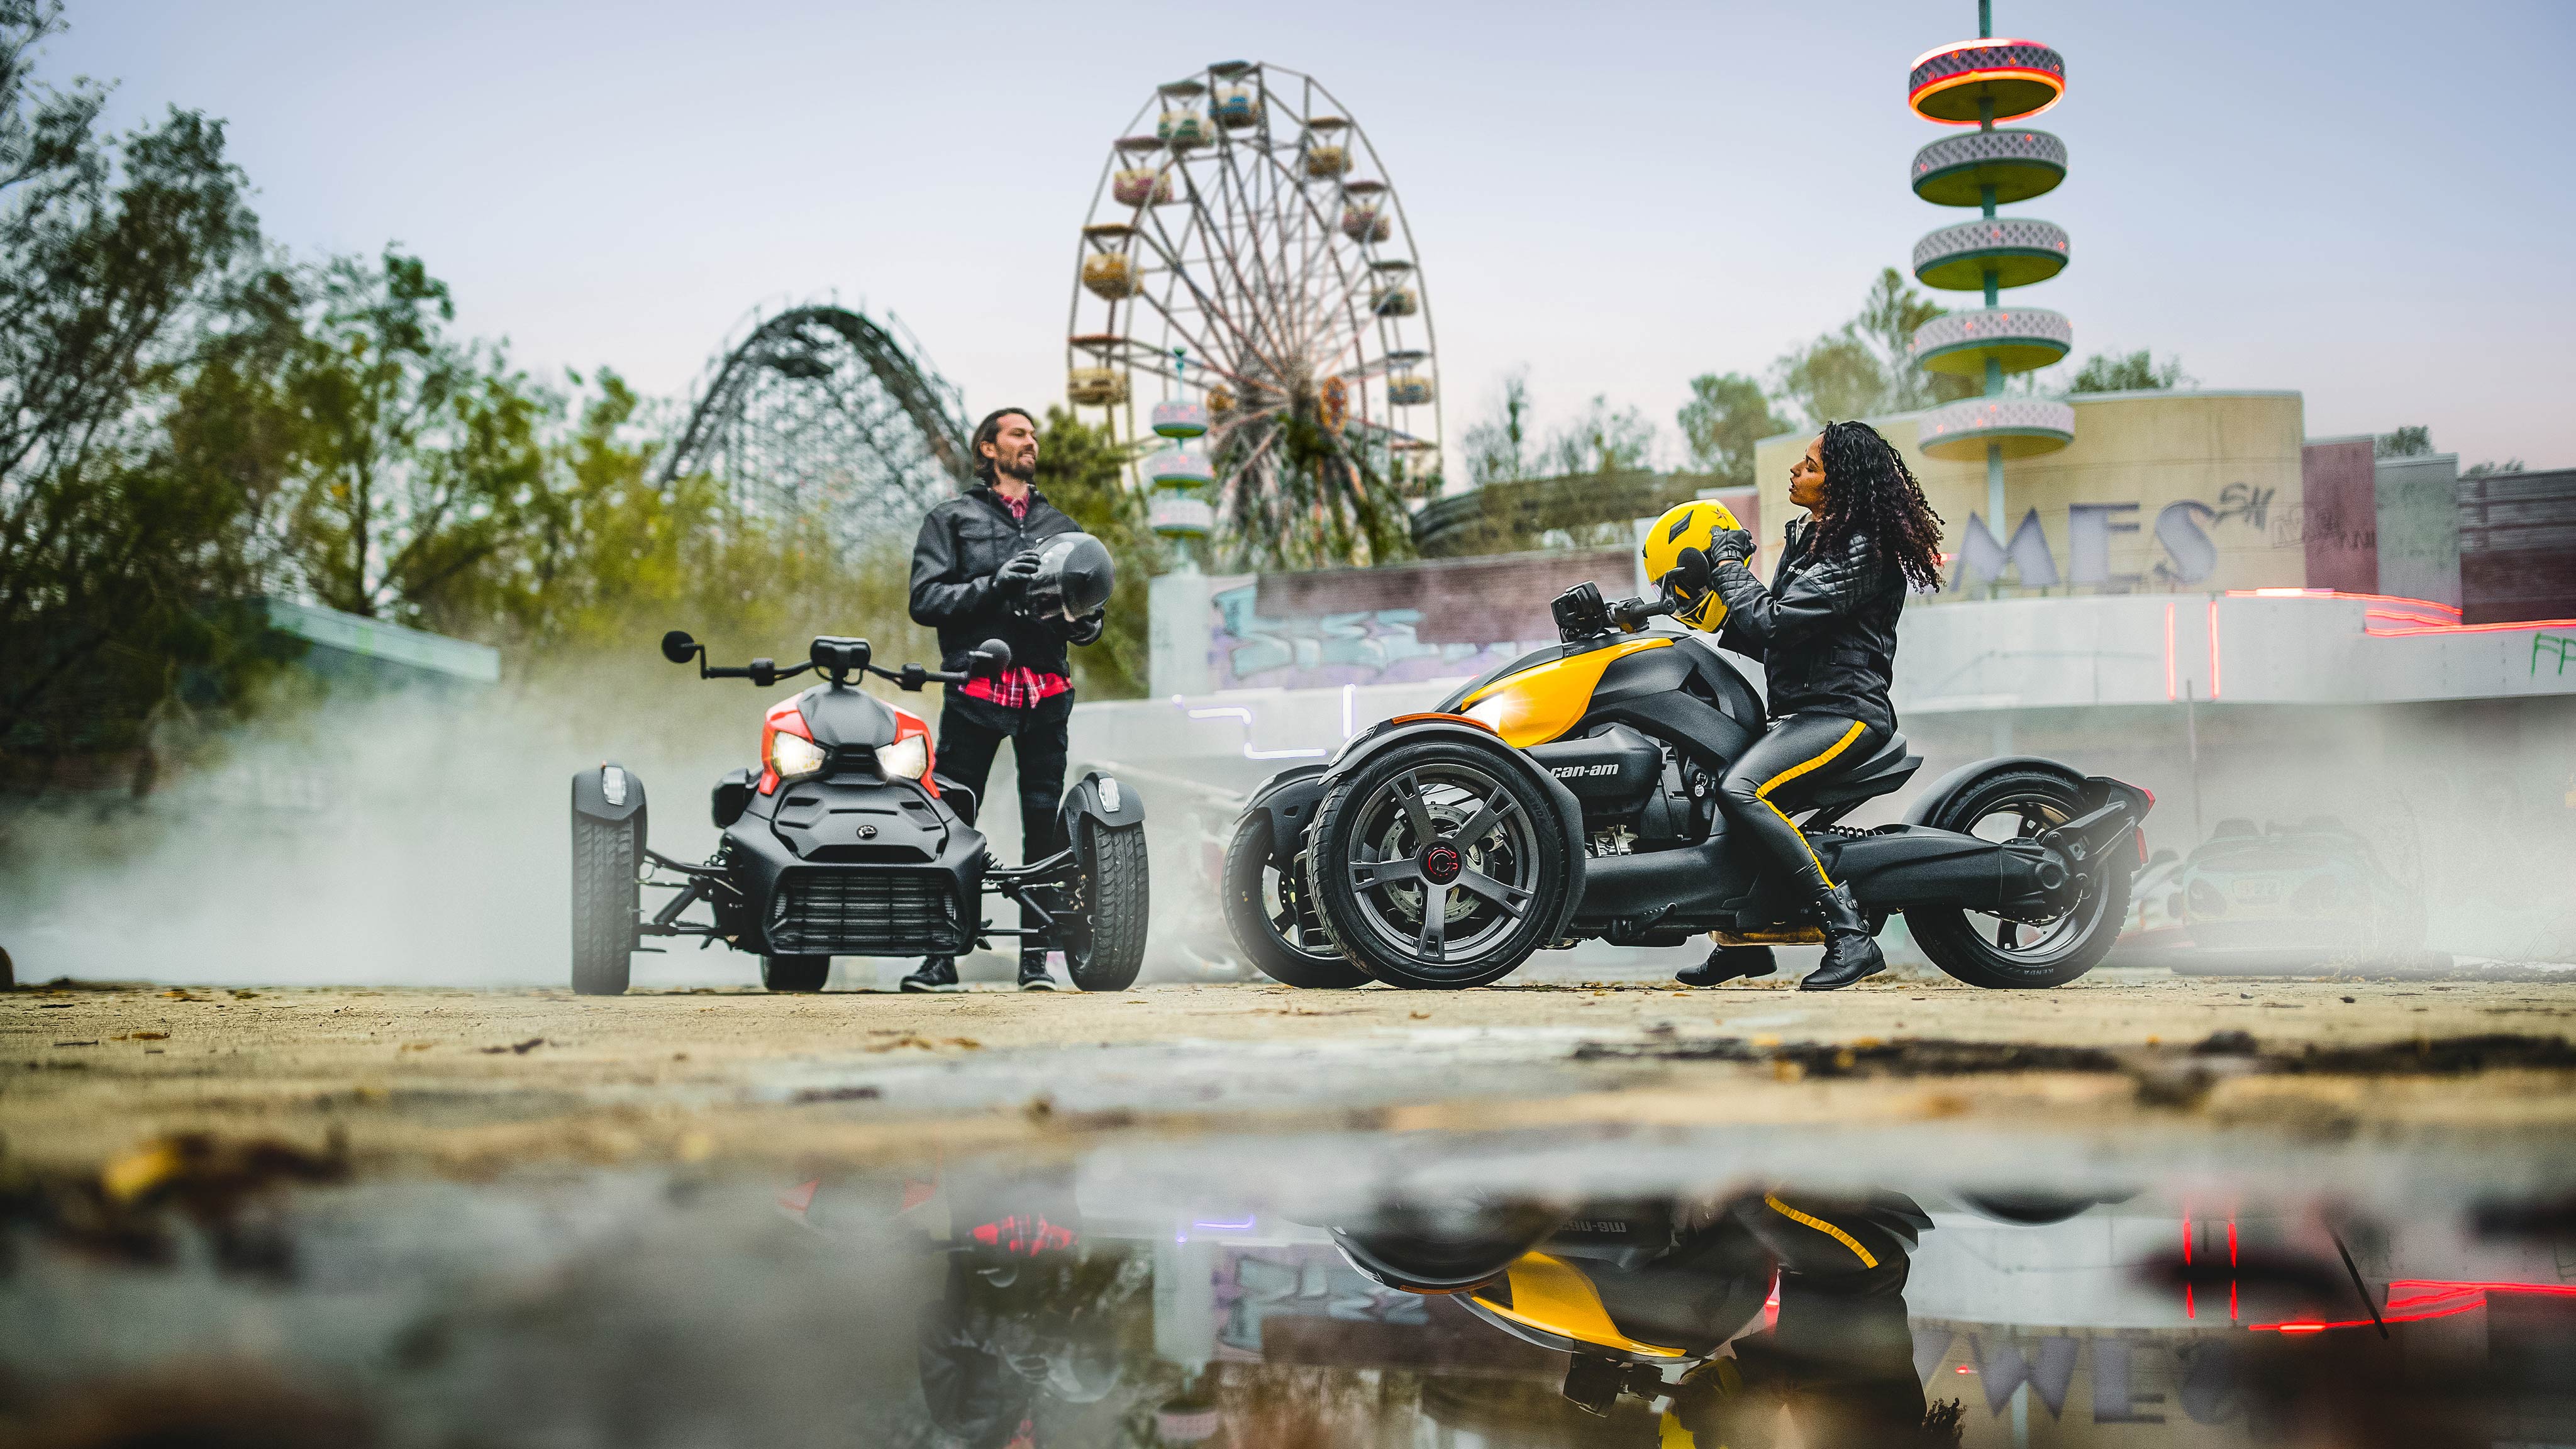 Deux amis garés devant un parc d’attractions avec leurs motos Can-Am Ryker, un avec panneaux Rouge adrénaline et l’autre avec panneaux Jaune vif